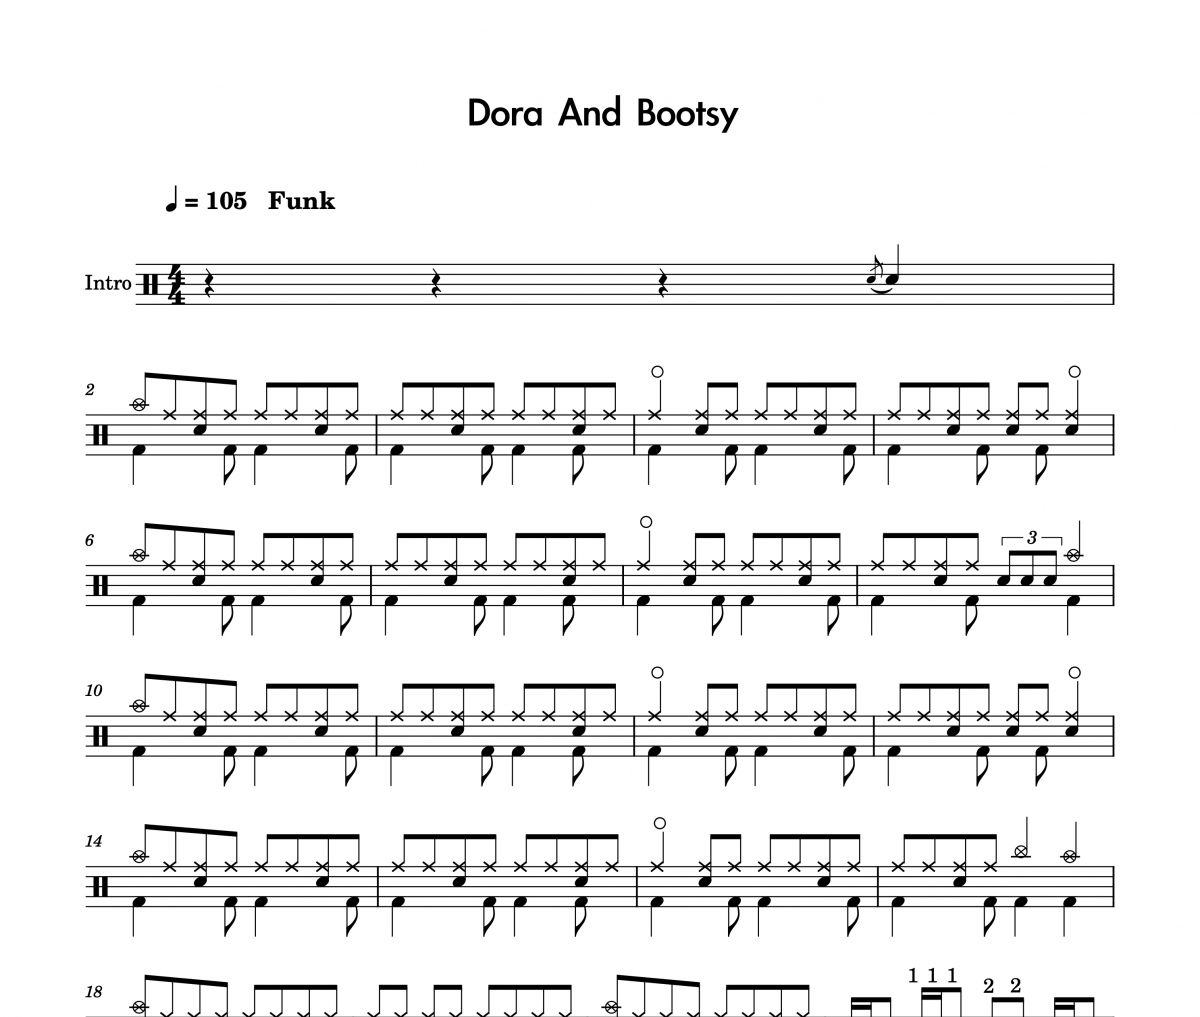 Dora and Bootsy四级考级曲鼓谱 九拍音乐《Dora and Bootsy四级考级曲》架子鼓|爵士鼓|鼓谱